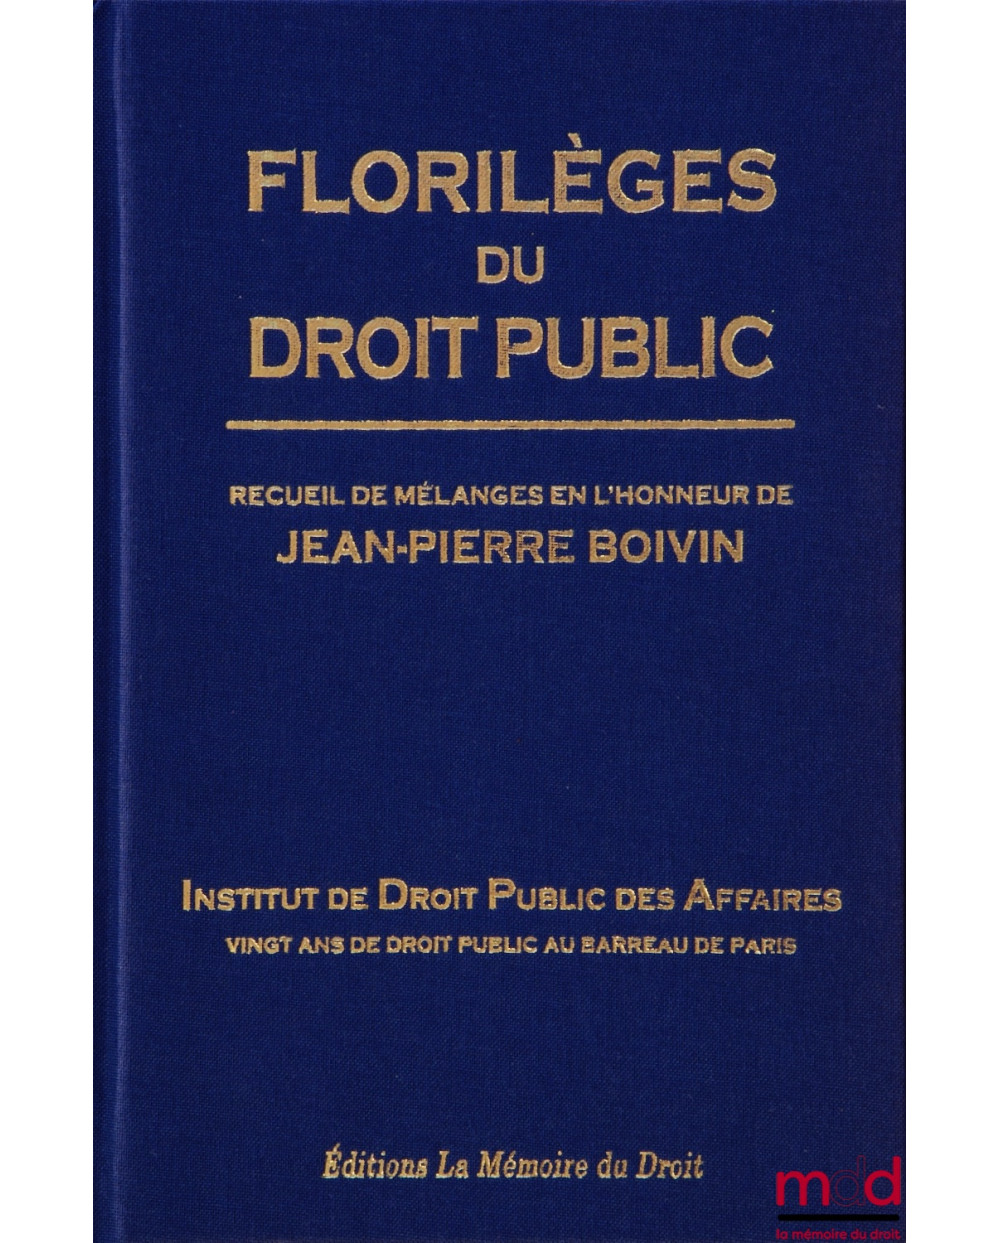 FLORILÈGES DU DROIT PUBLIC Recueil de Mélanges en l’honneur de Jean-Pierre BOIVIN Institut de Droit Public des Affaires V...